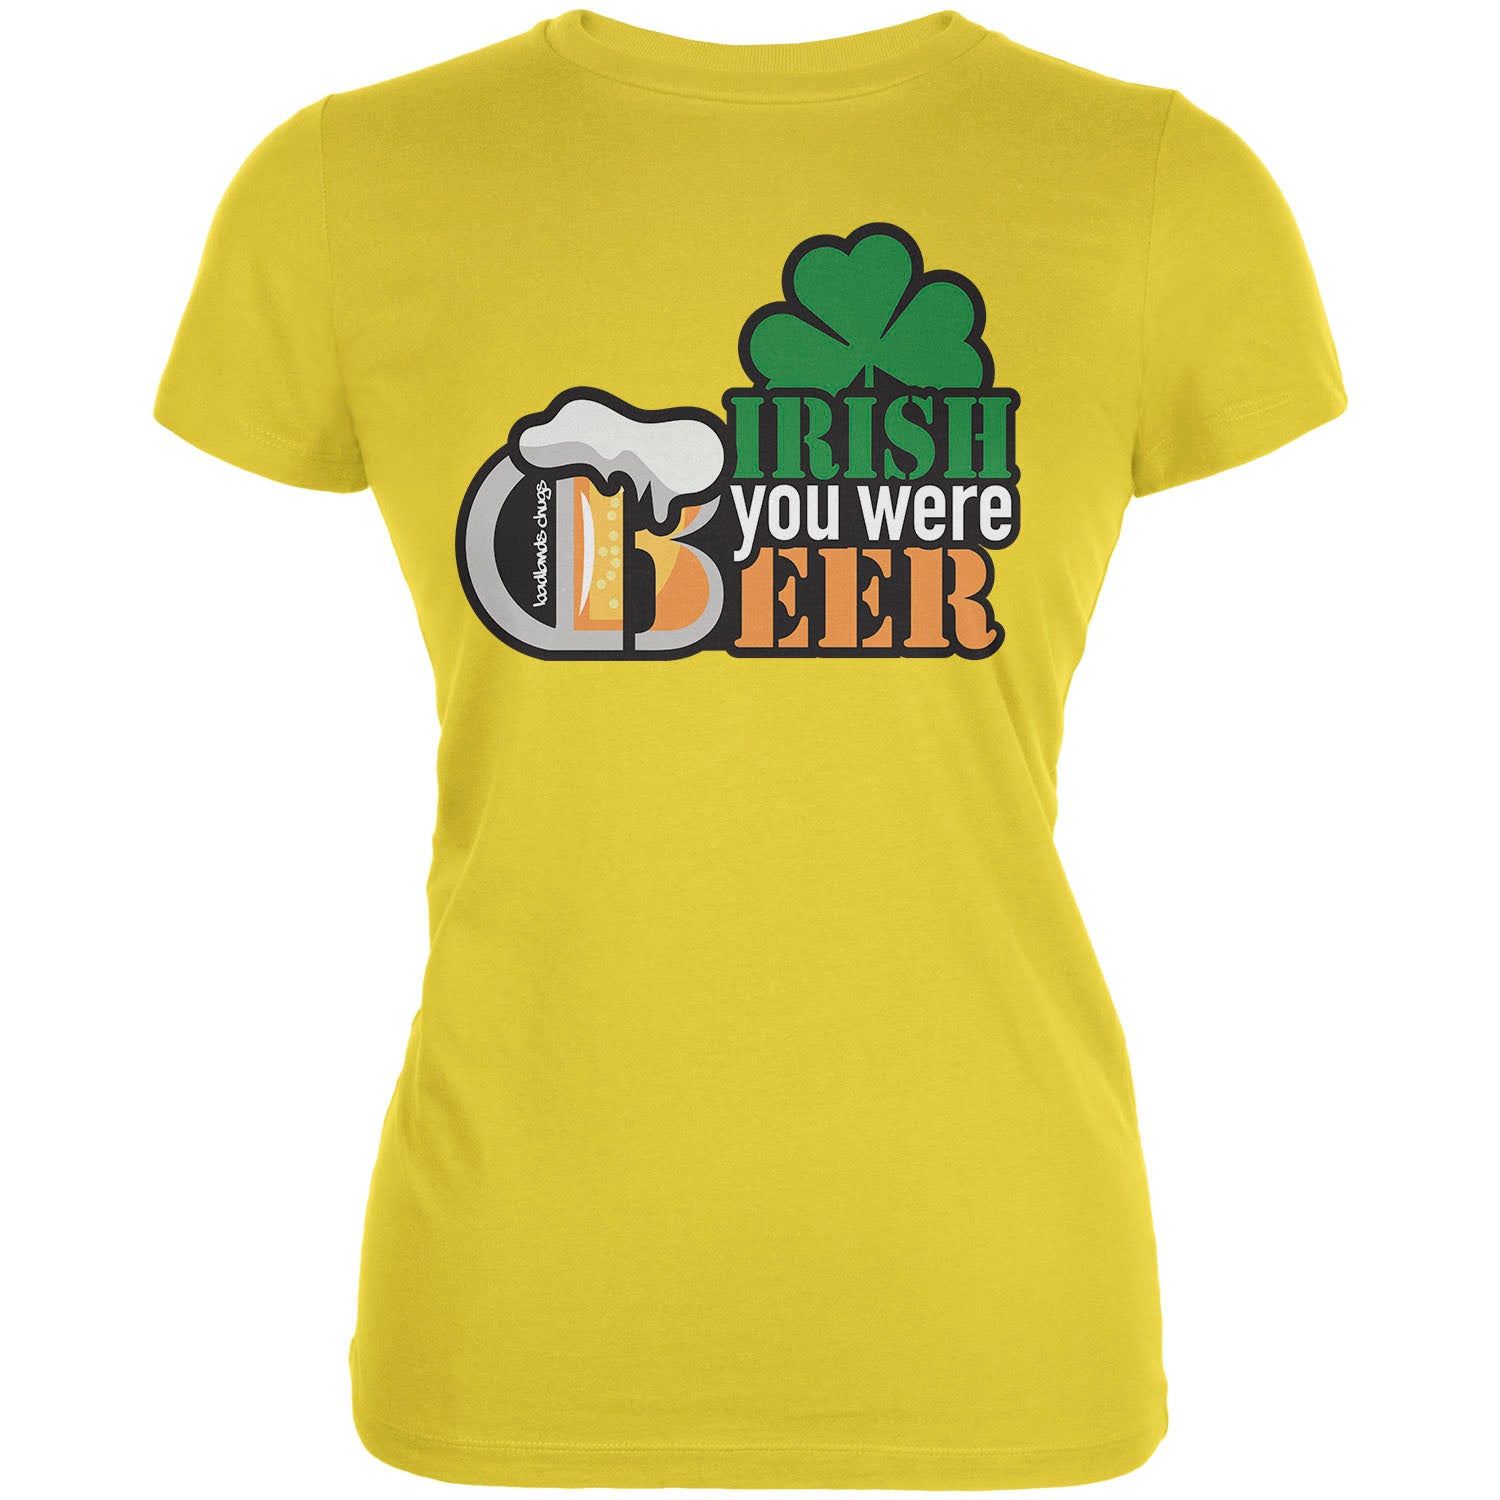 Irish You Were Beer Junior's T-Shirt